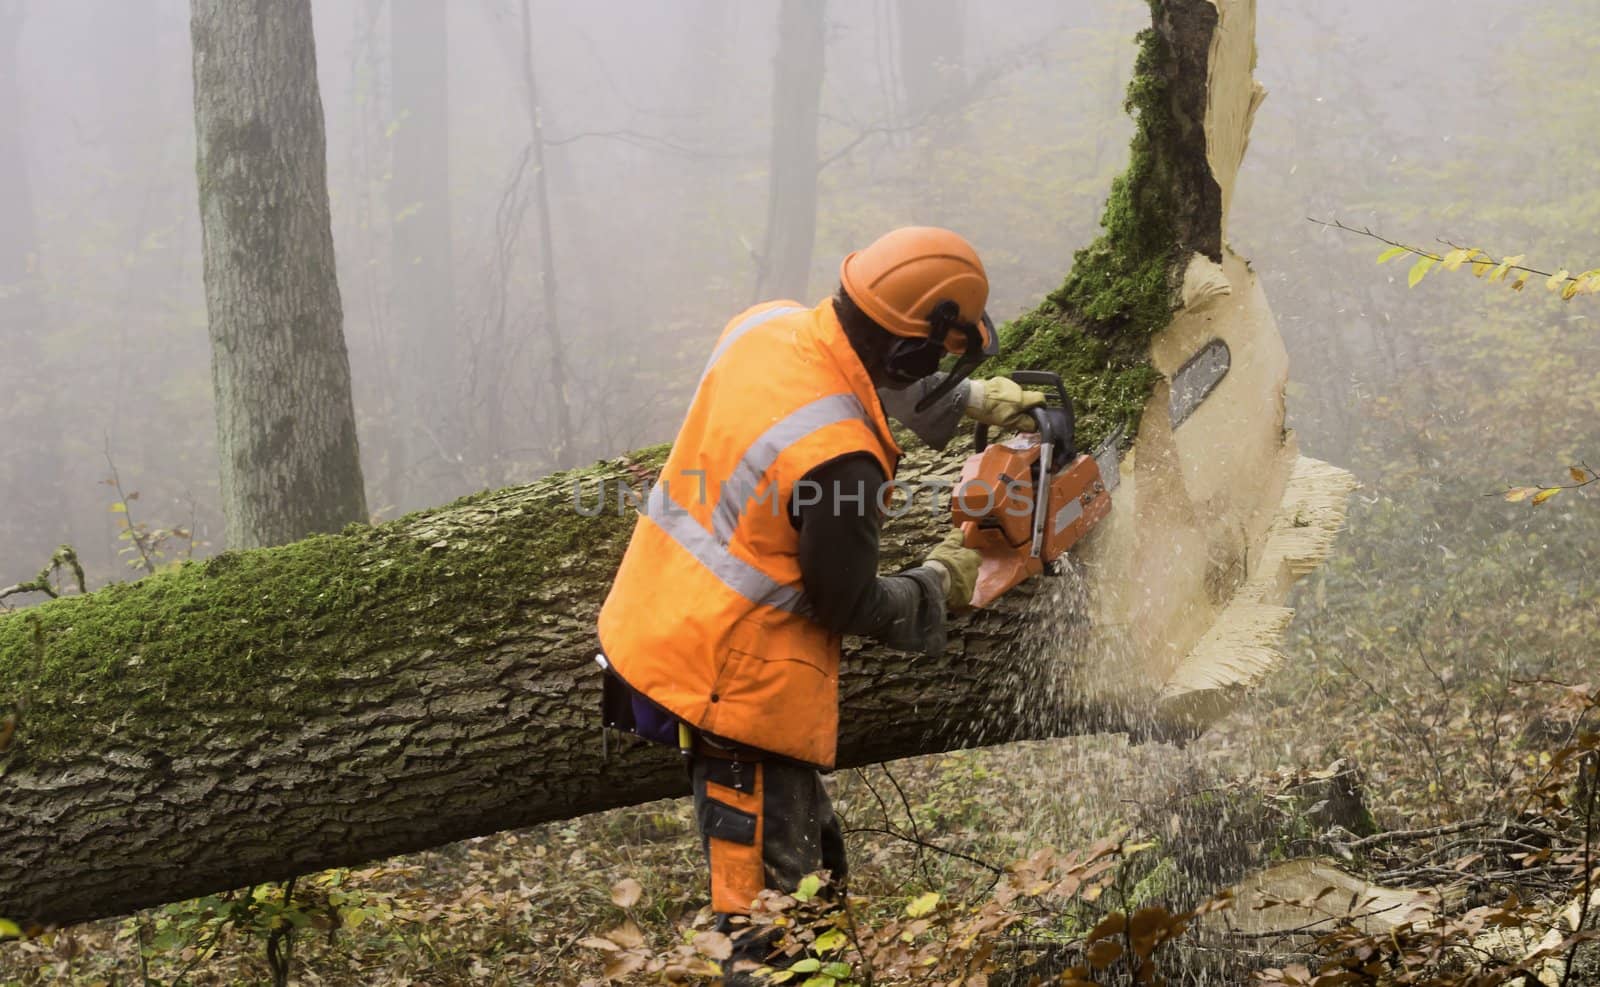 Lumberjack by gufoto